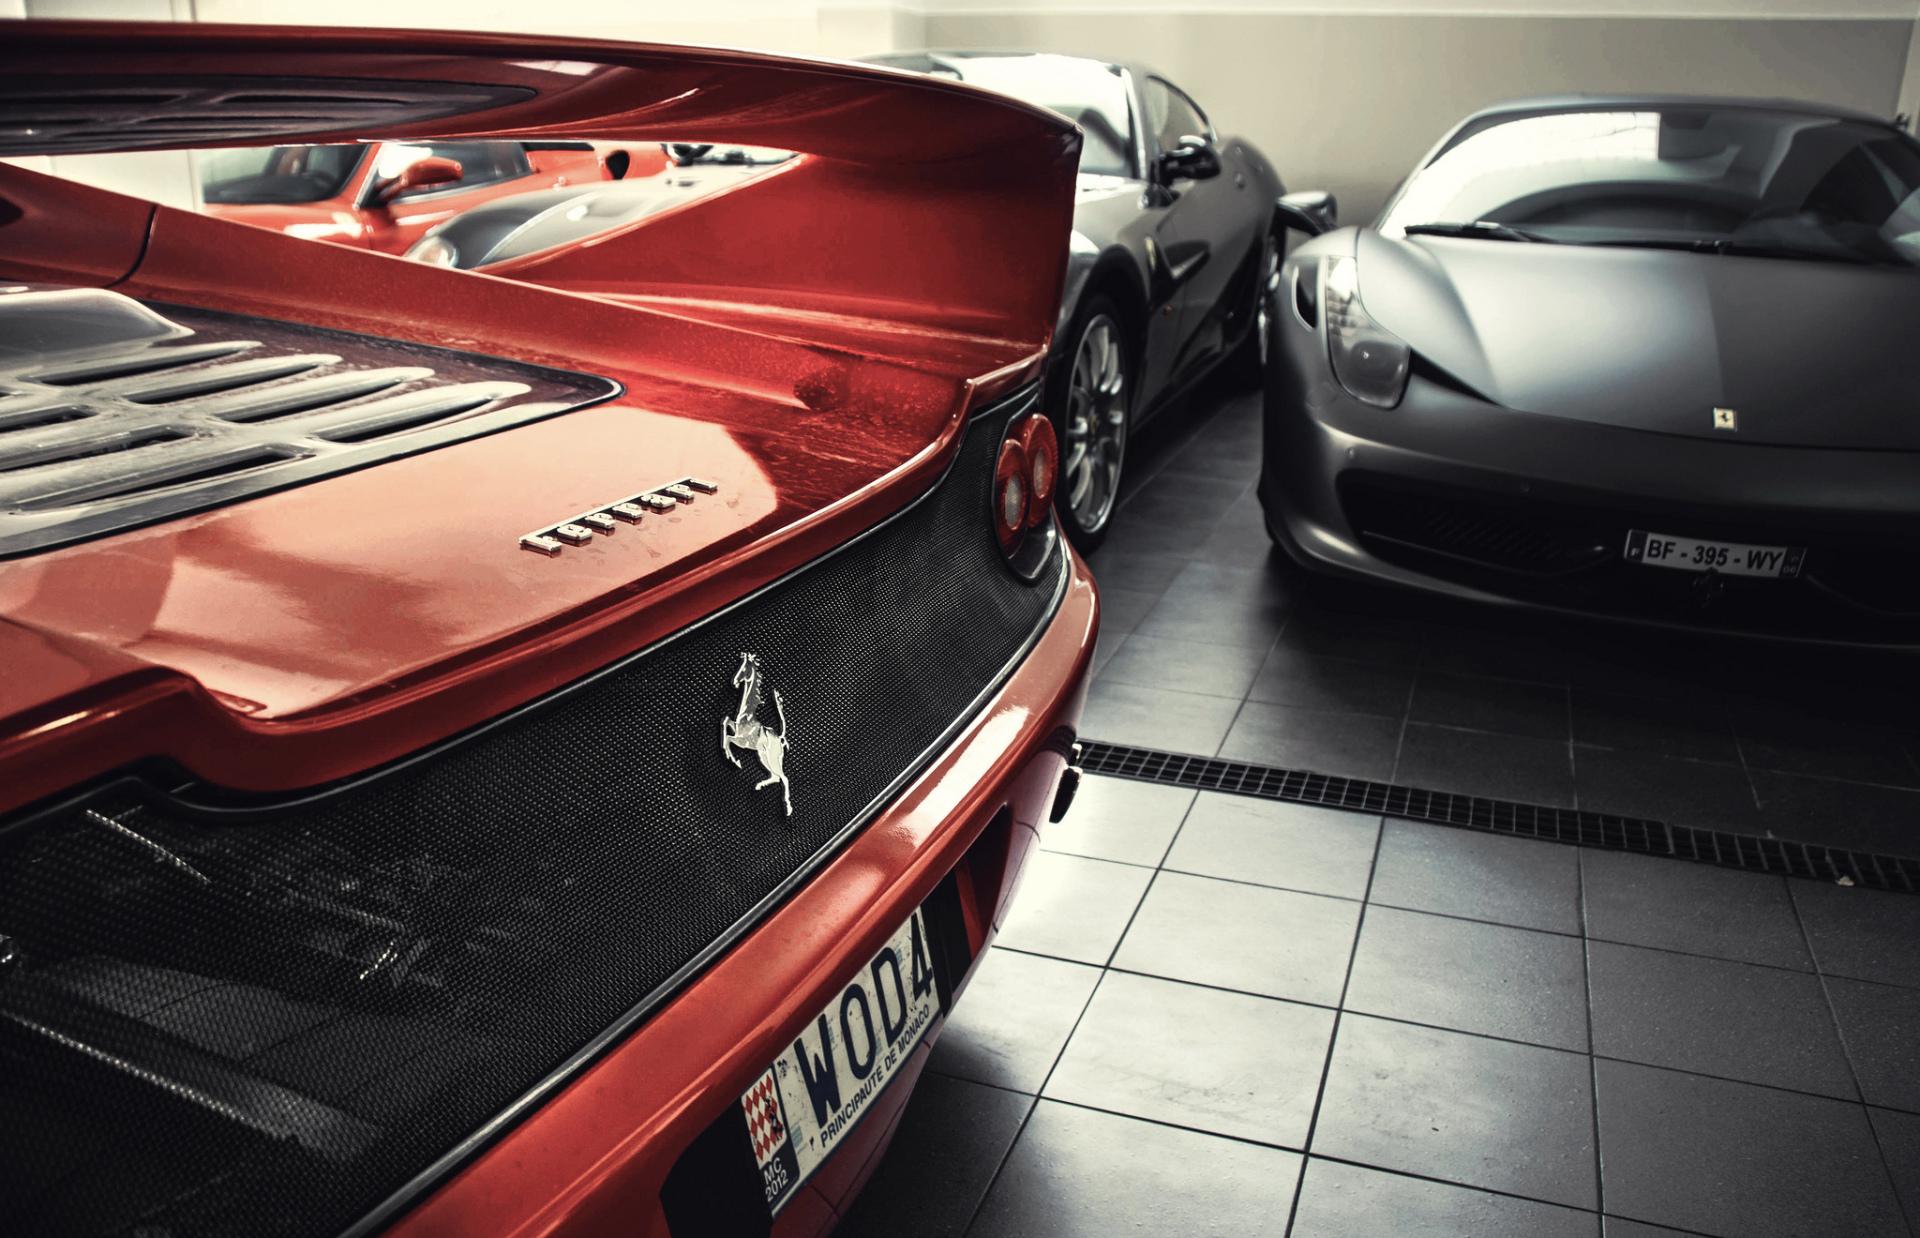 Ferrari F50 at 1280 x 960 size wallpapers HD quality